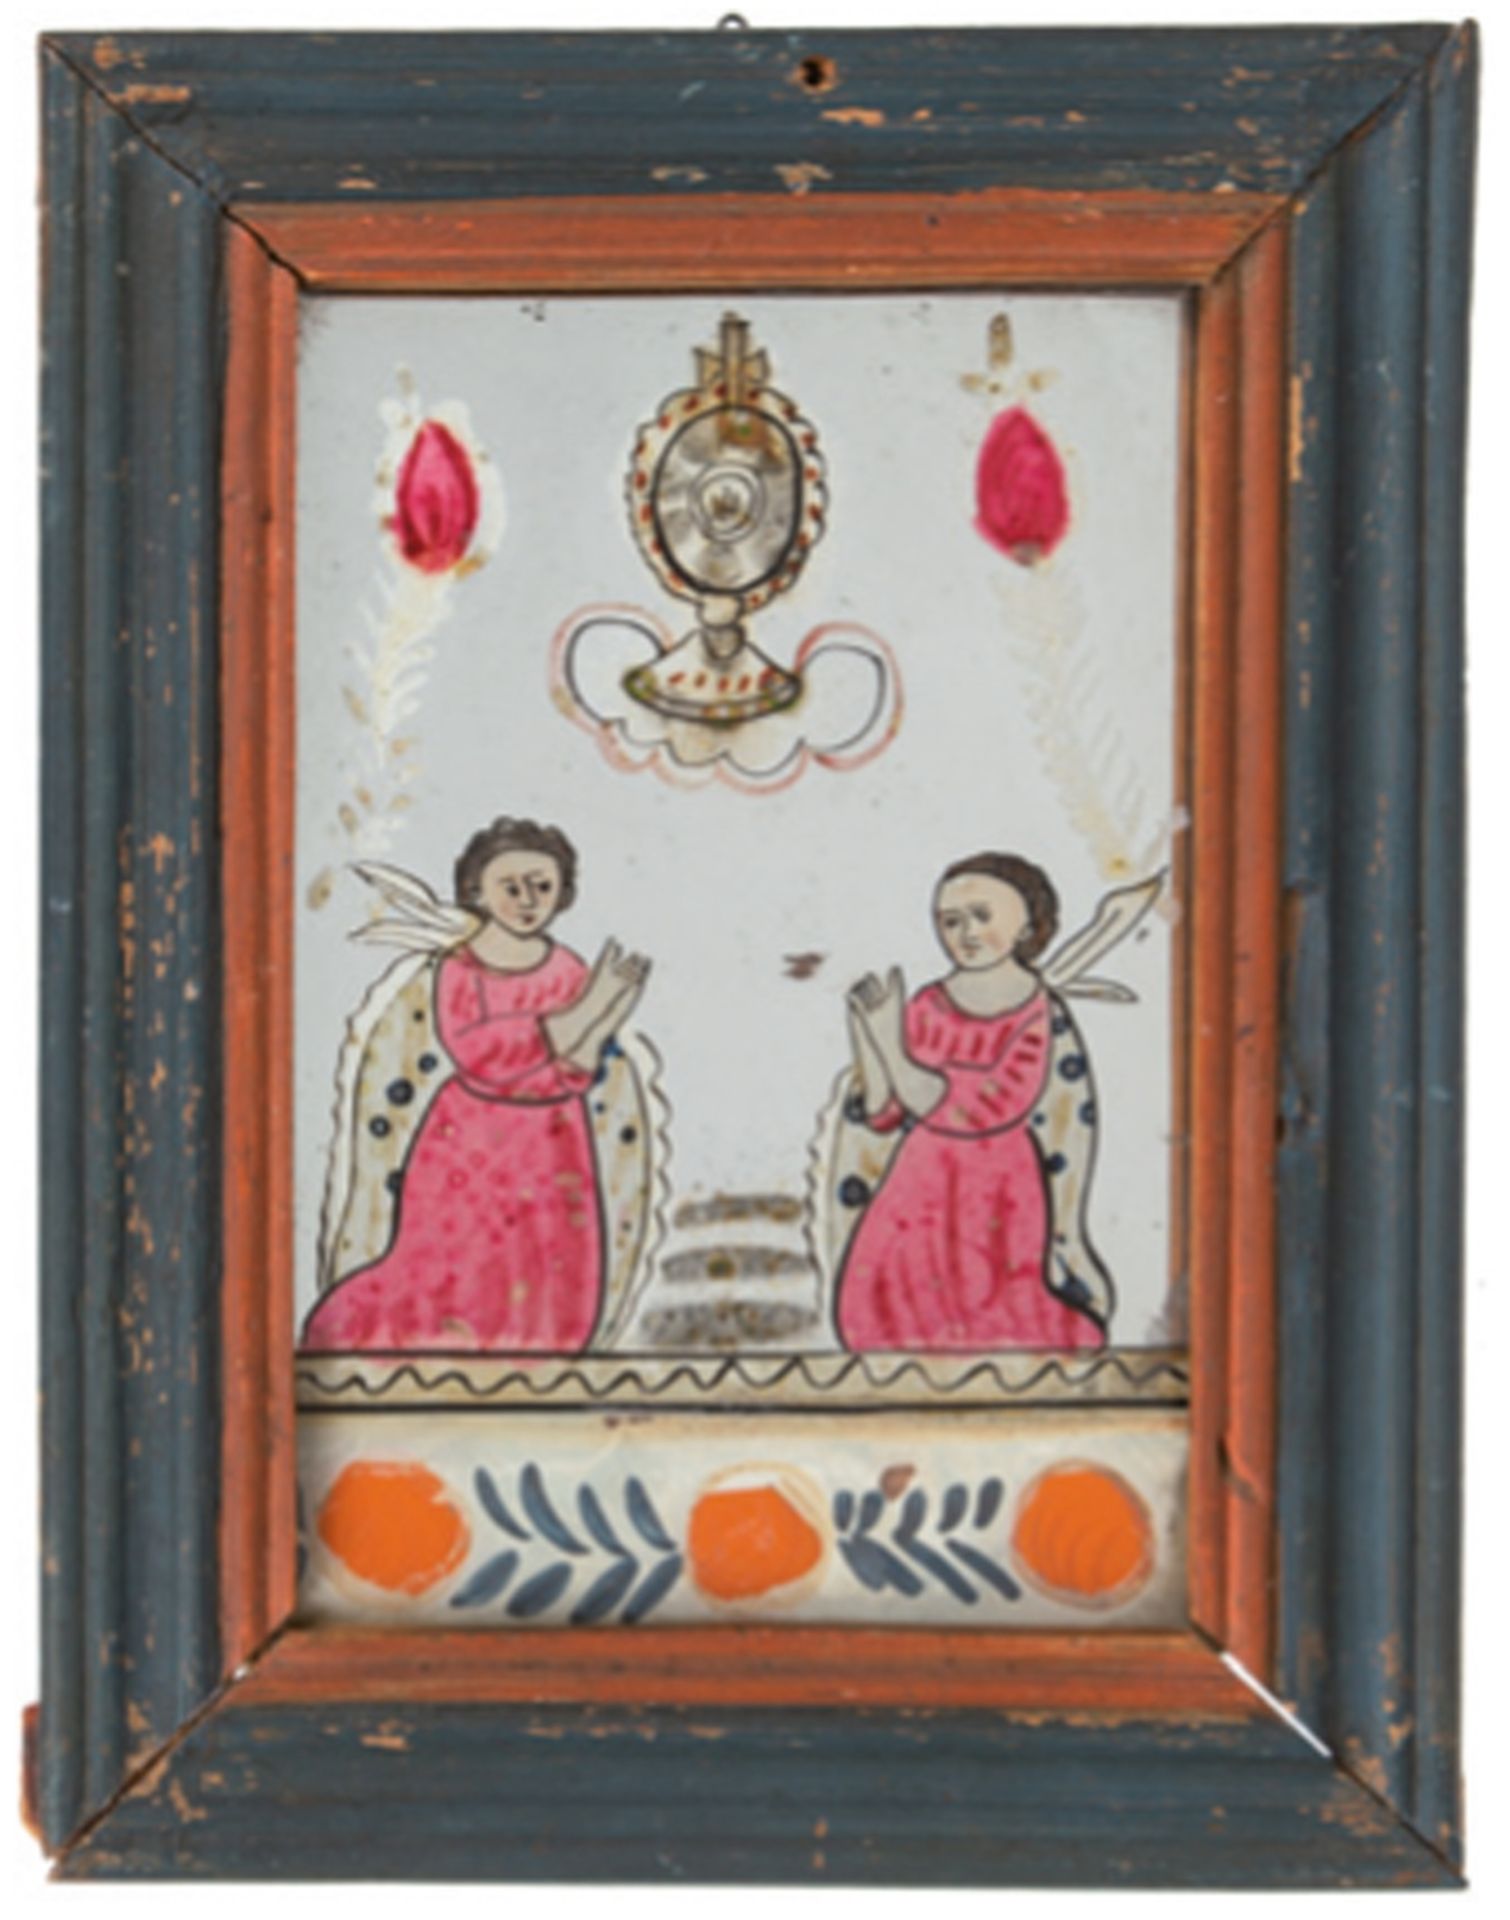 Hinterglasmalerei, 19. Jh., sakral, verspiegelt, 18x11,5 cm, Rahmen